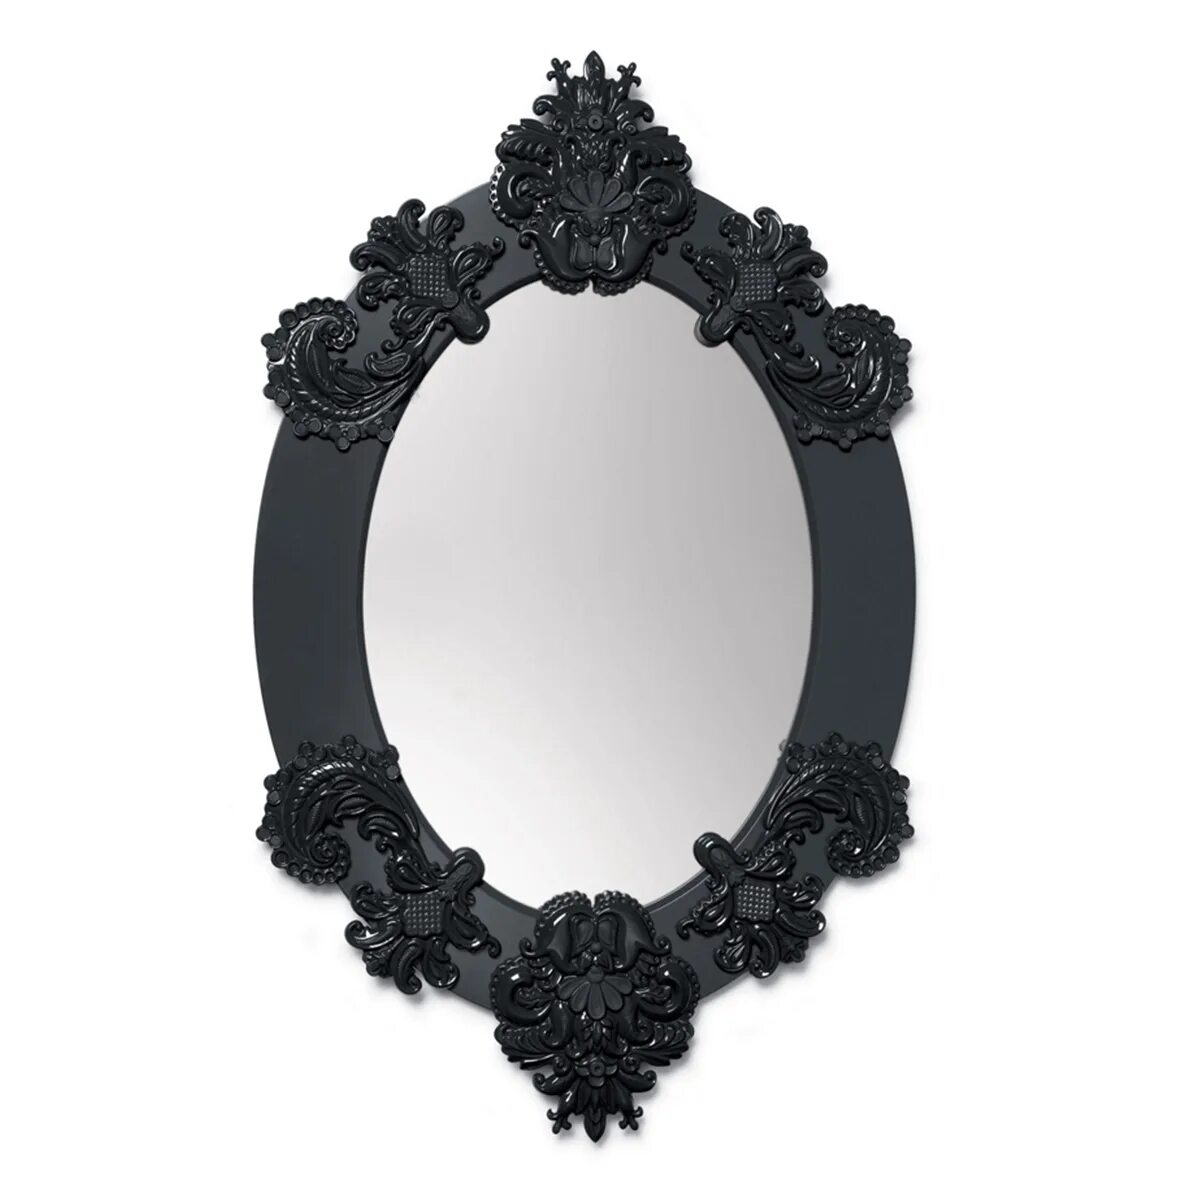 Аксессуары зеркало. Зеркало овальное в черной раме. Зеркало овальное с черной рамкой. Овальное зеркало в деревянной раме. Рамка для овального зеркала.